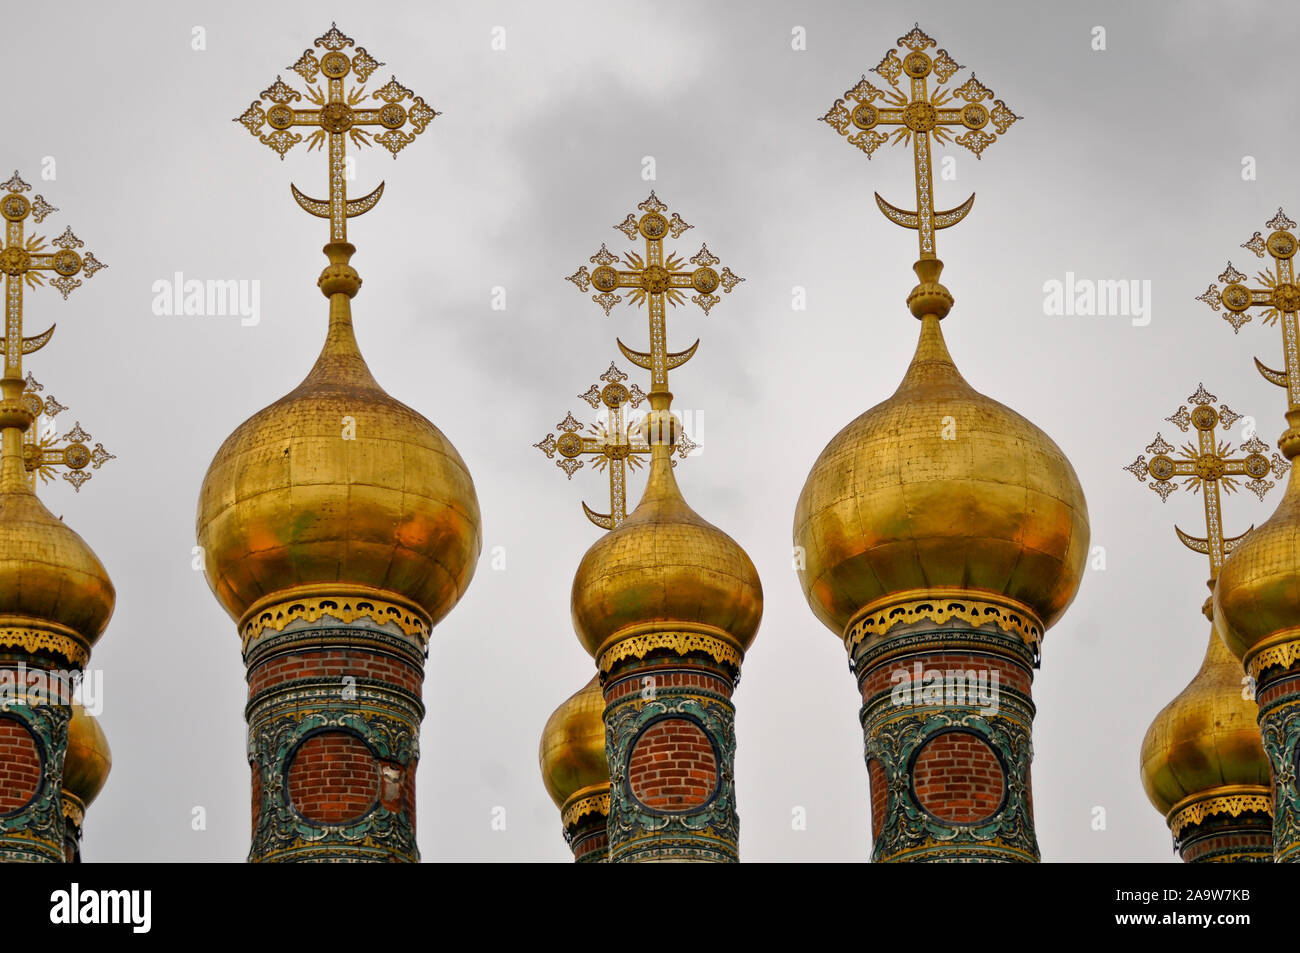 Église de la Nativité. Place de la cathédrale, le Kremlin de Moscou, Russie Banque D'Images